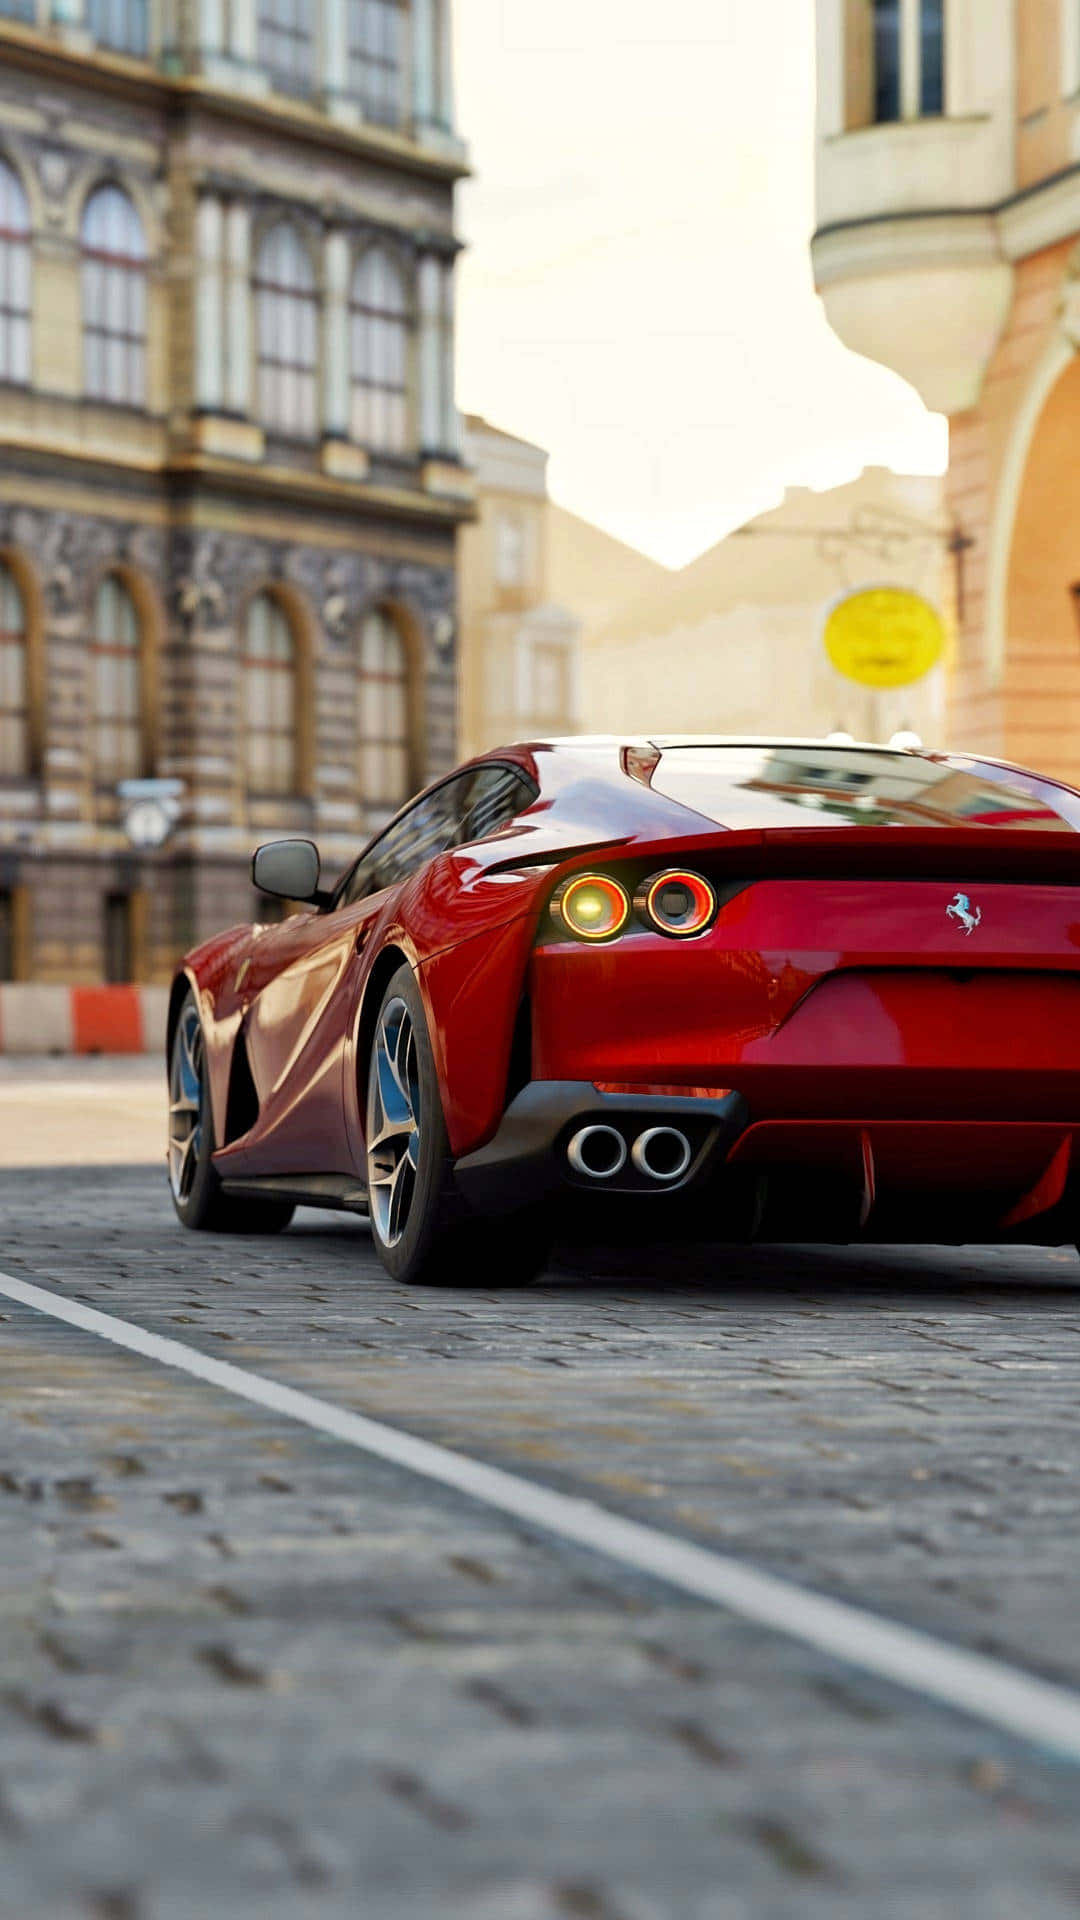 Ferrari F12tdi - A Red Sports Car On A City Street